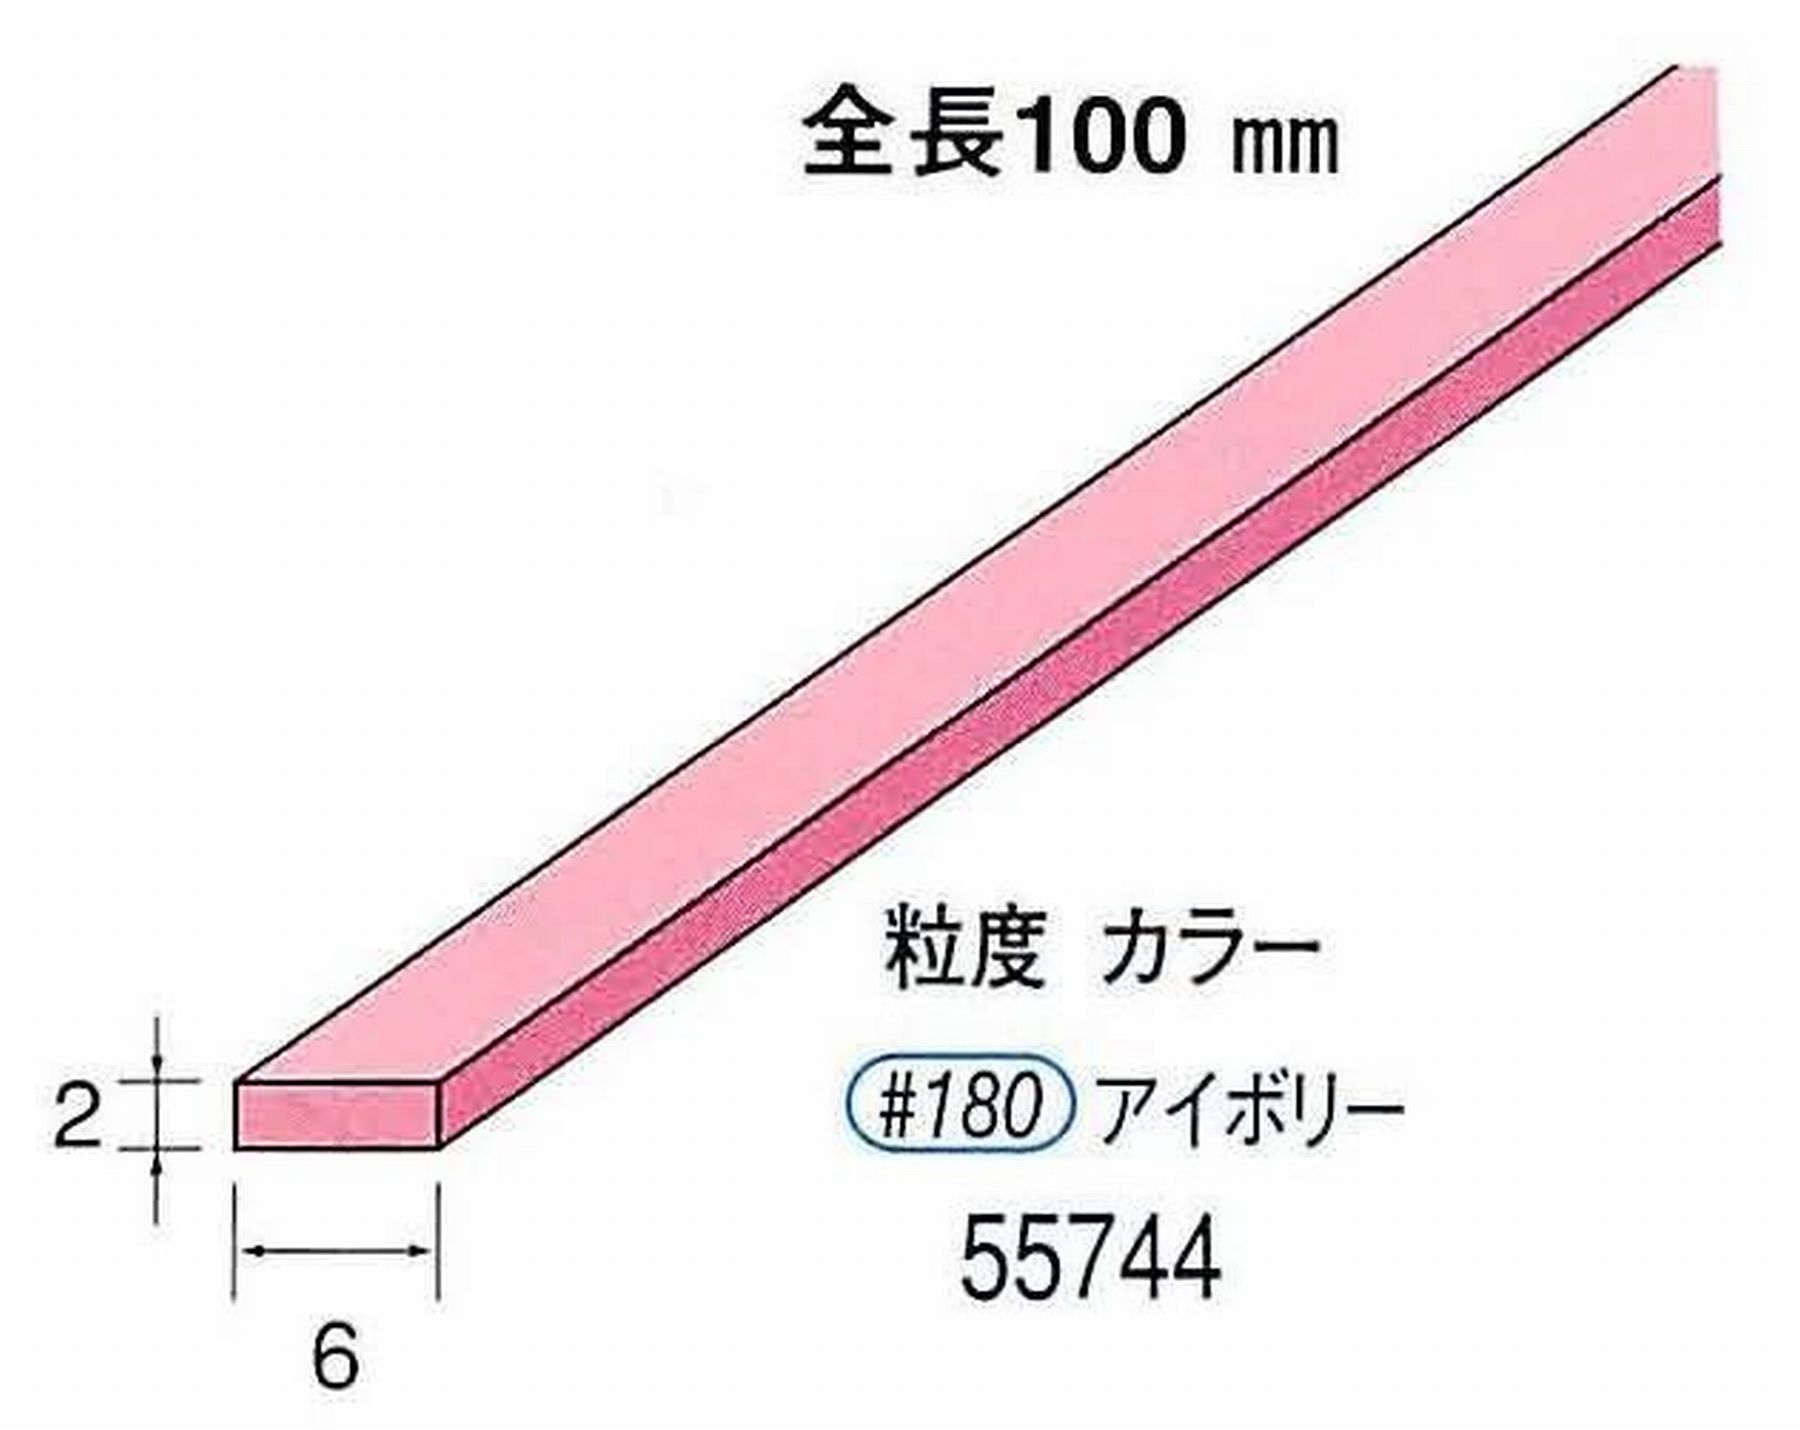 ナカニシ/NAKANISHI セラファイバー砥石 全長100mm アイボリー 55744